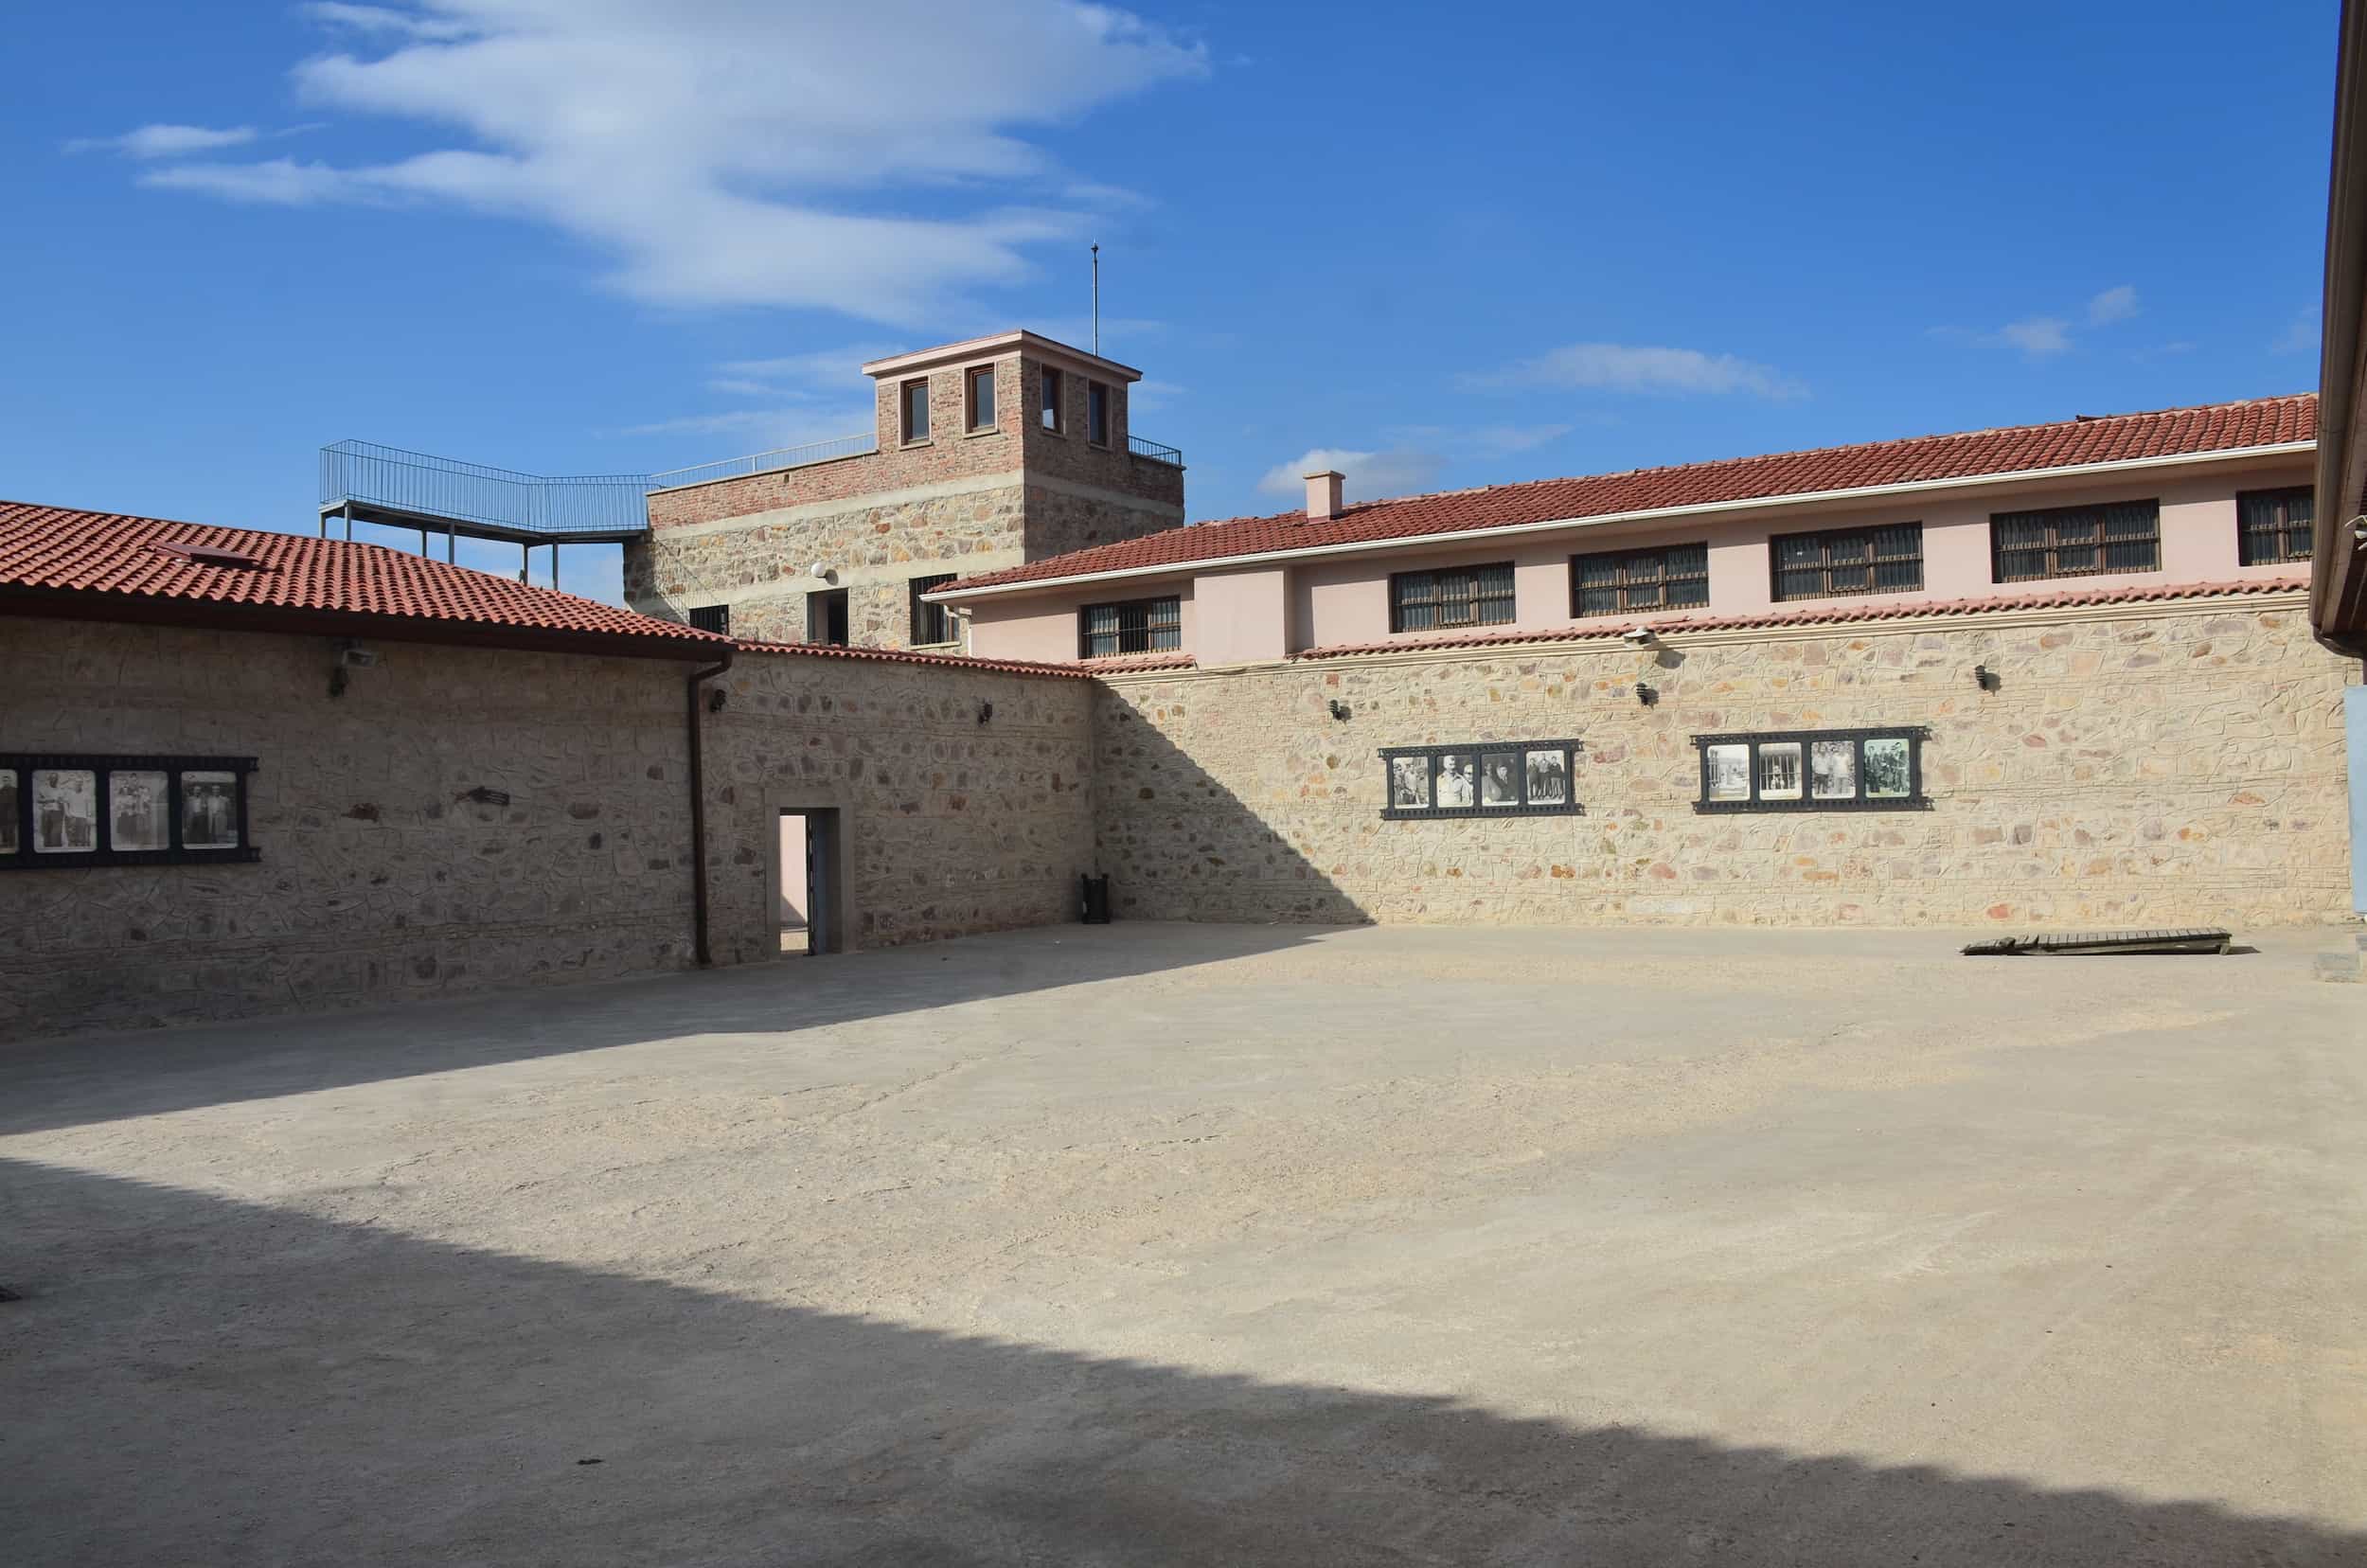 4th Ward courtyard at Ulucanlar Prison in Ankara, Turkey